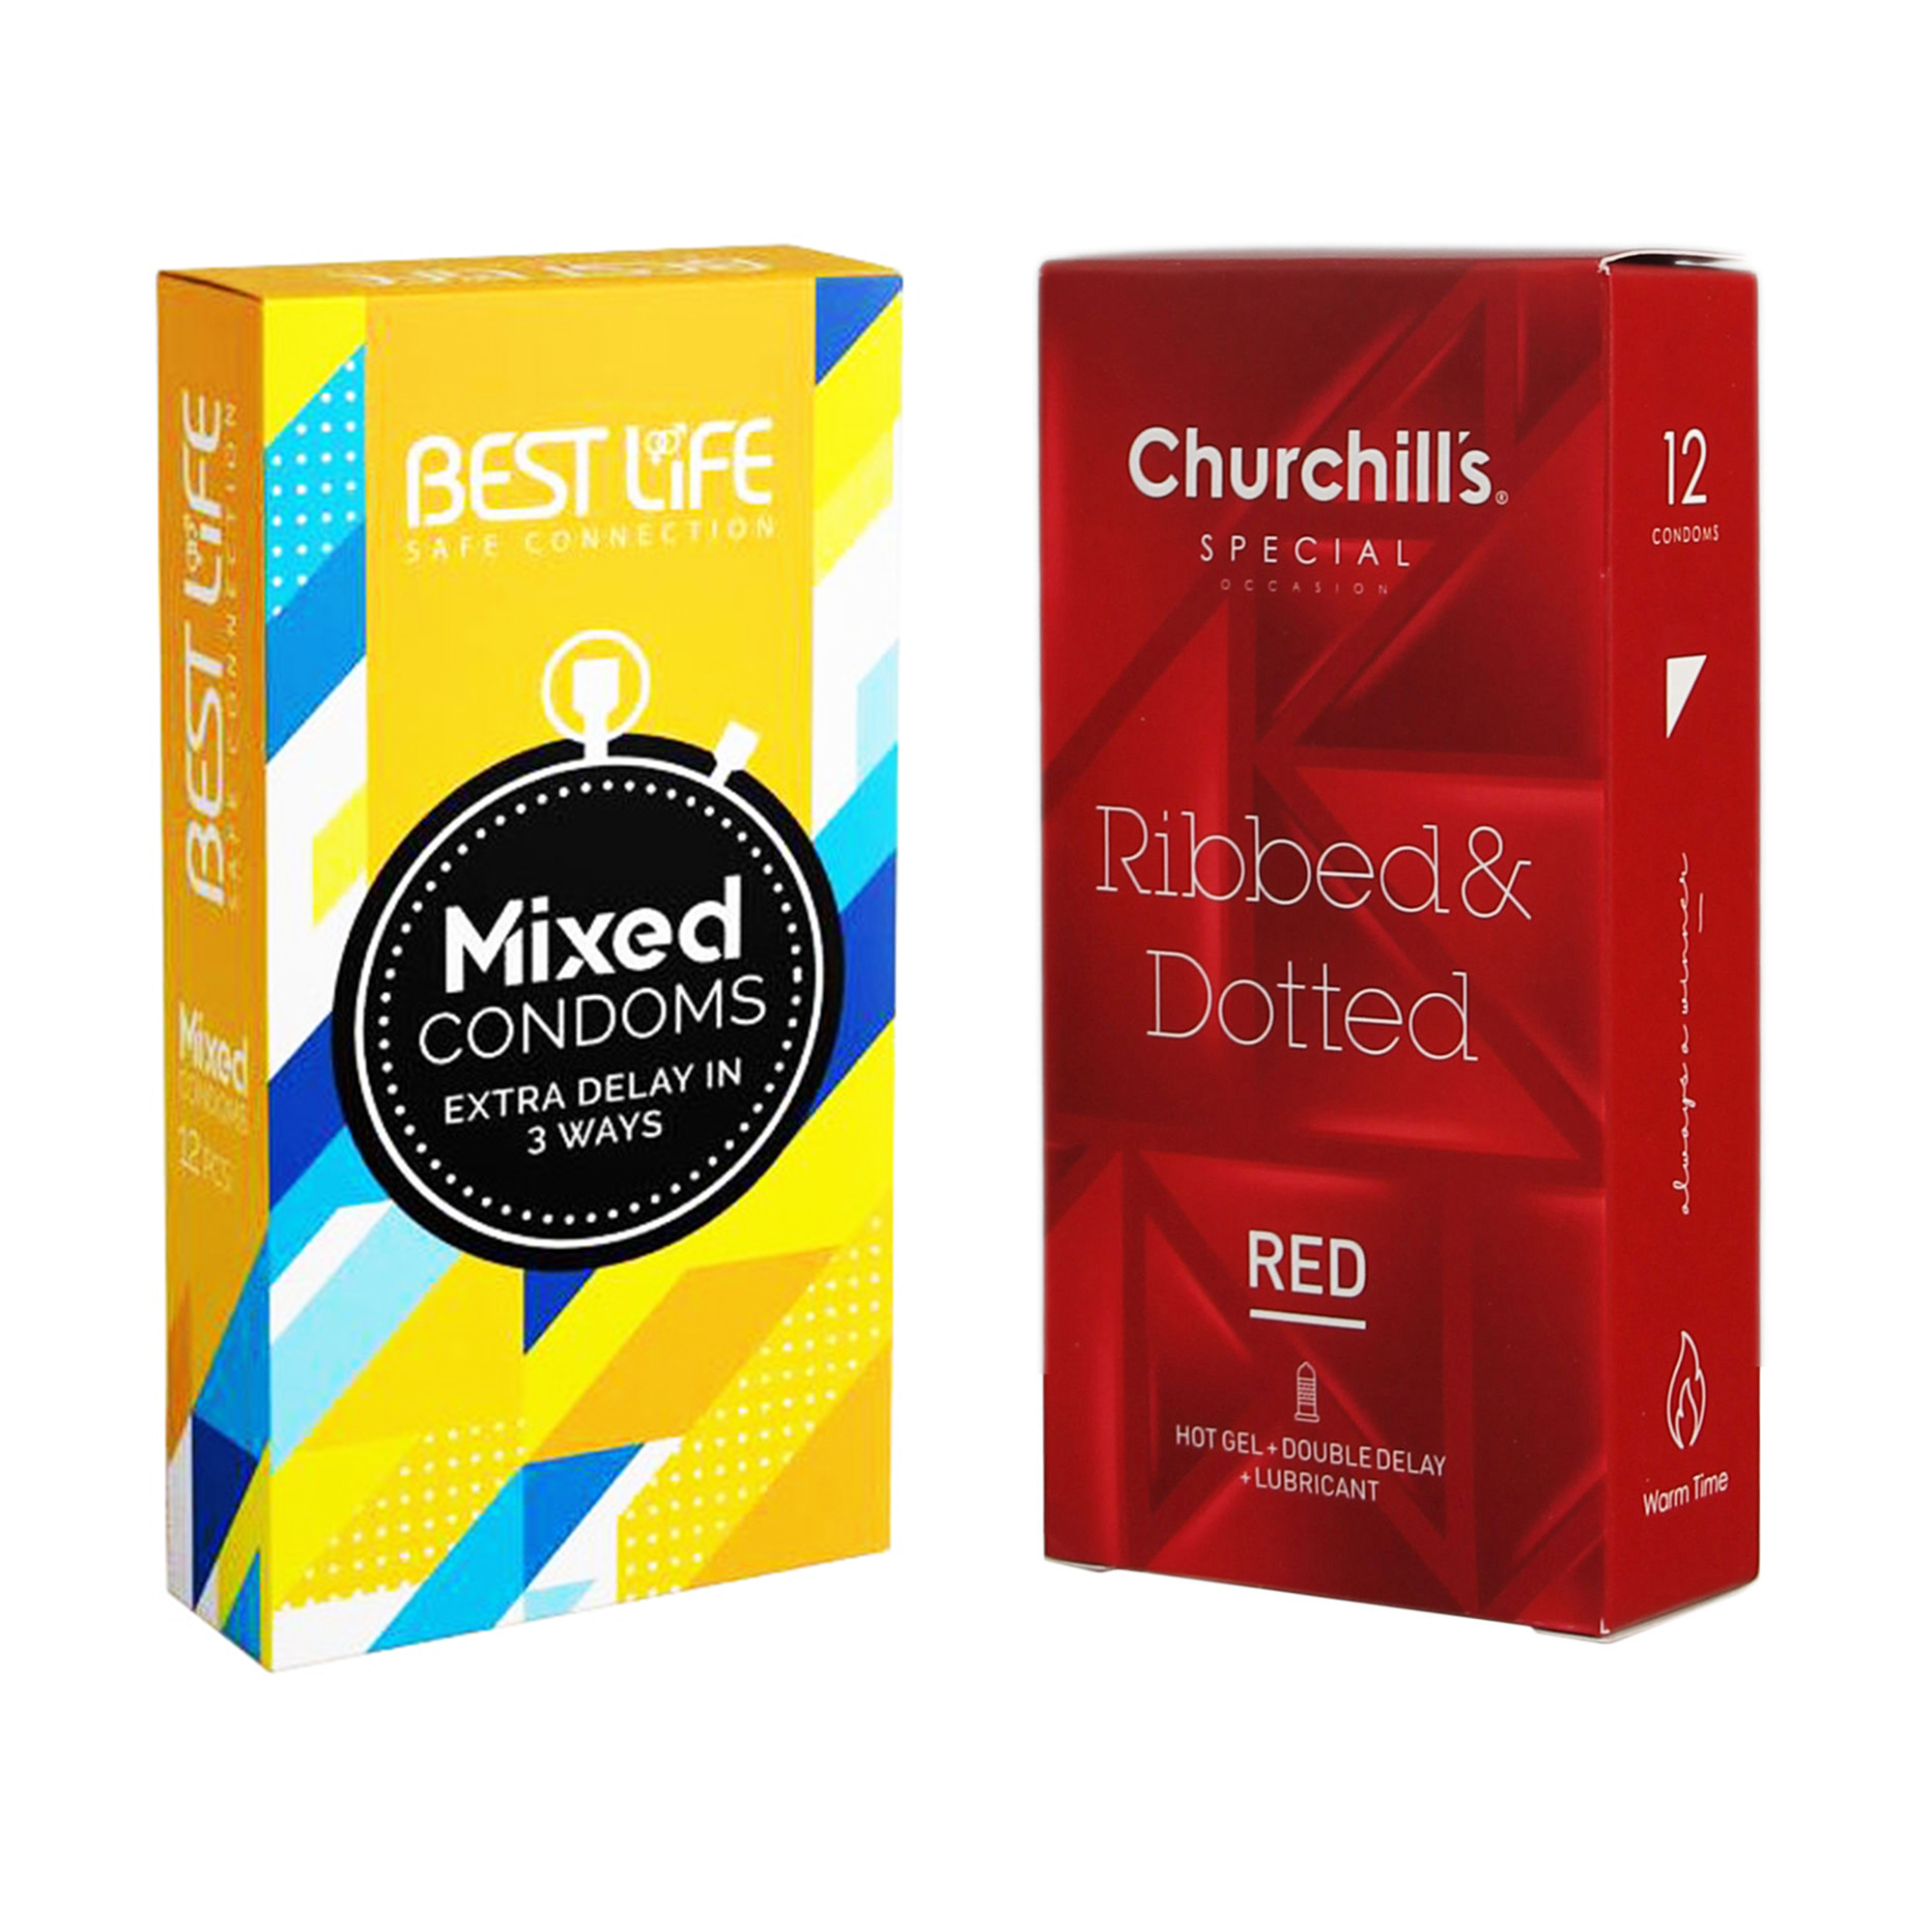 کاندوم چرچیلز مدل Ribbed & Dotted Red بسته 12 عددی به همراه کاندوم بست لایف مدل Mixed بسته 12 عددی